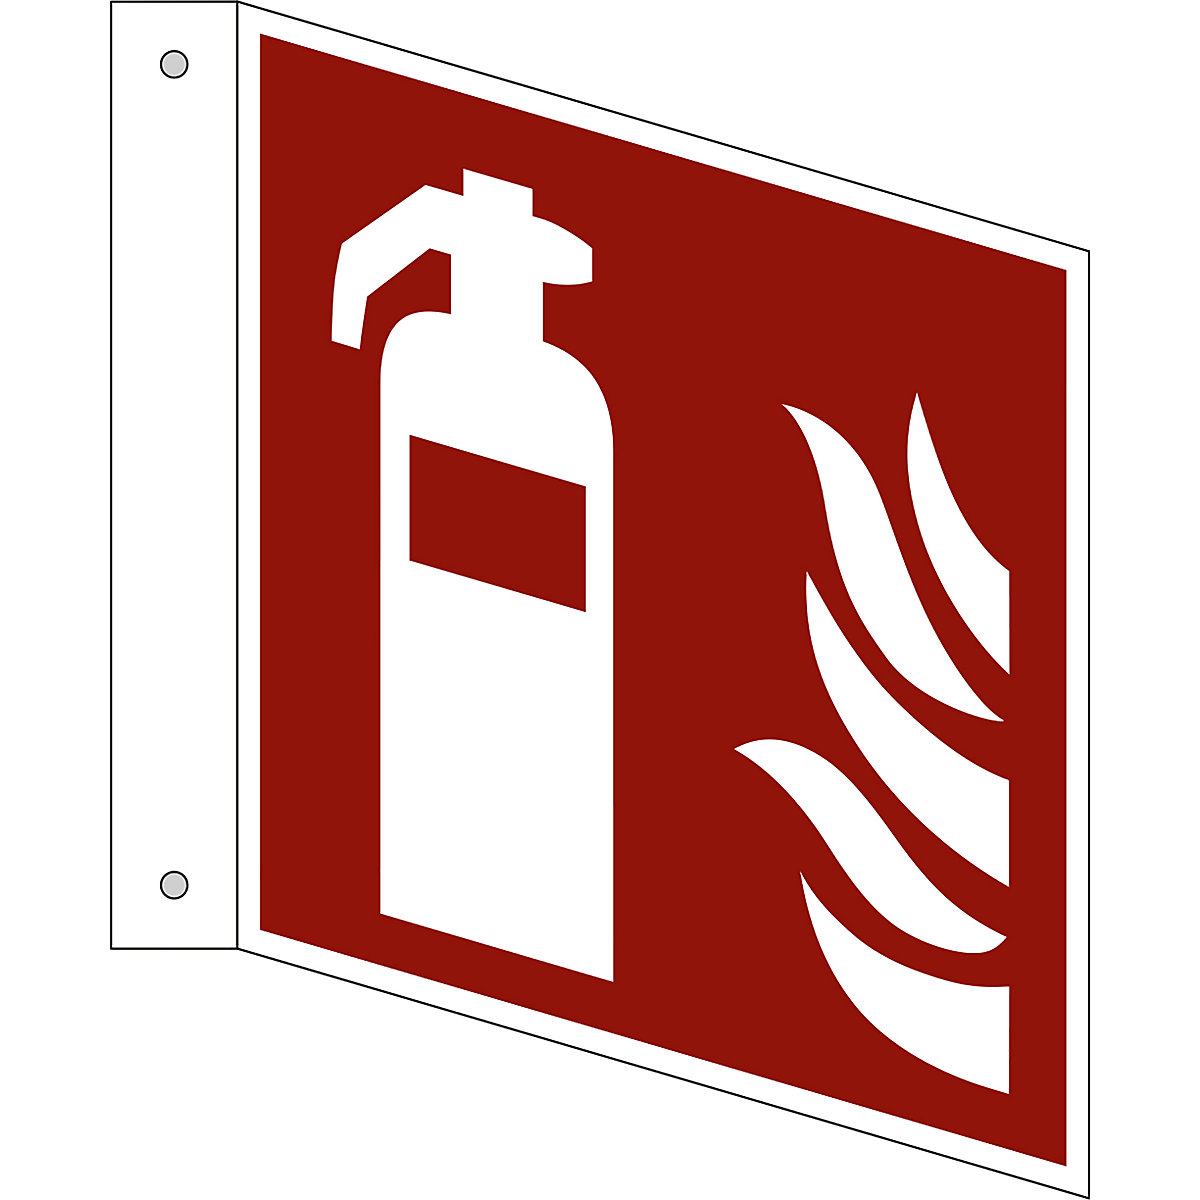 Značka pro ochranu proti požáru, hasicí přístroj, bal.j. 10 ks, plast, vlajkový štítek, 150 x 150 mm